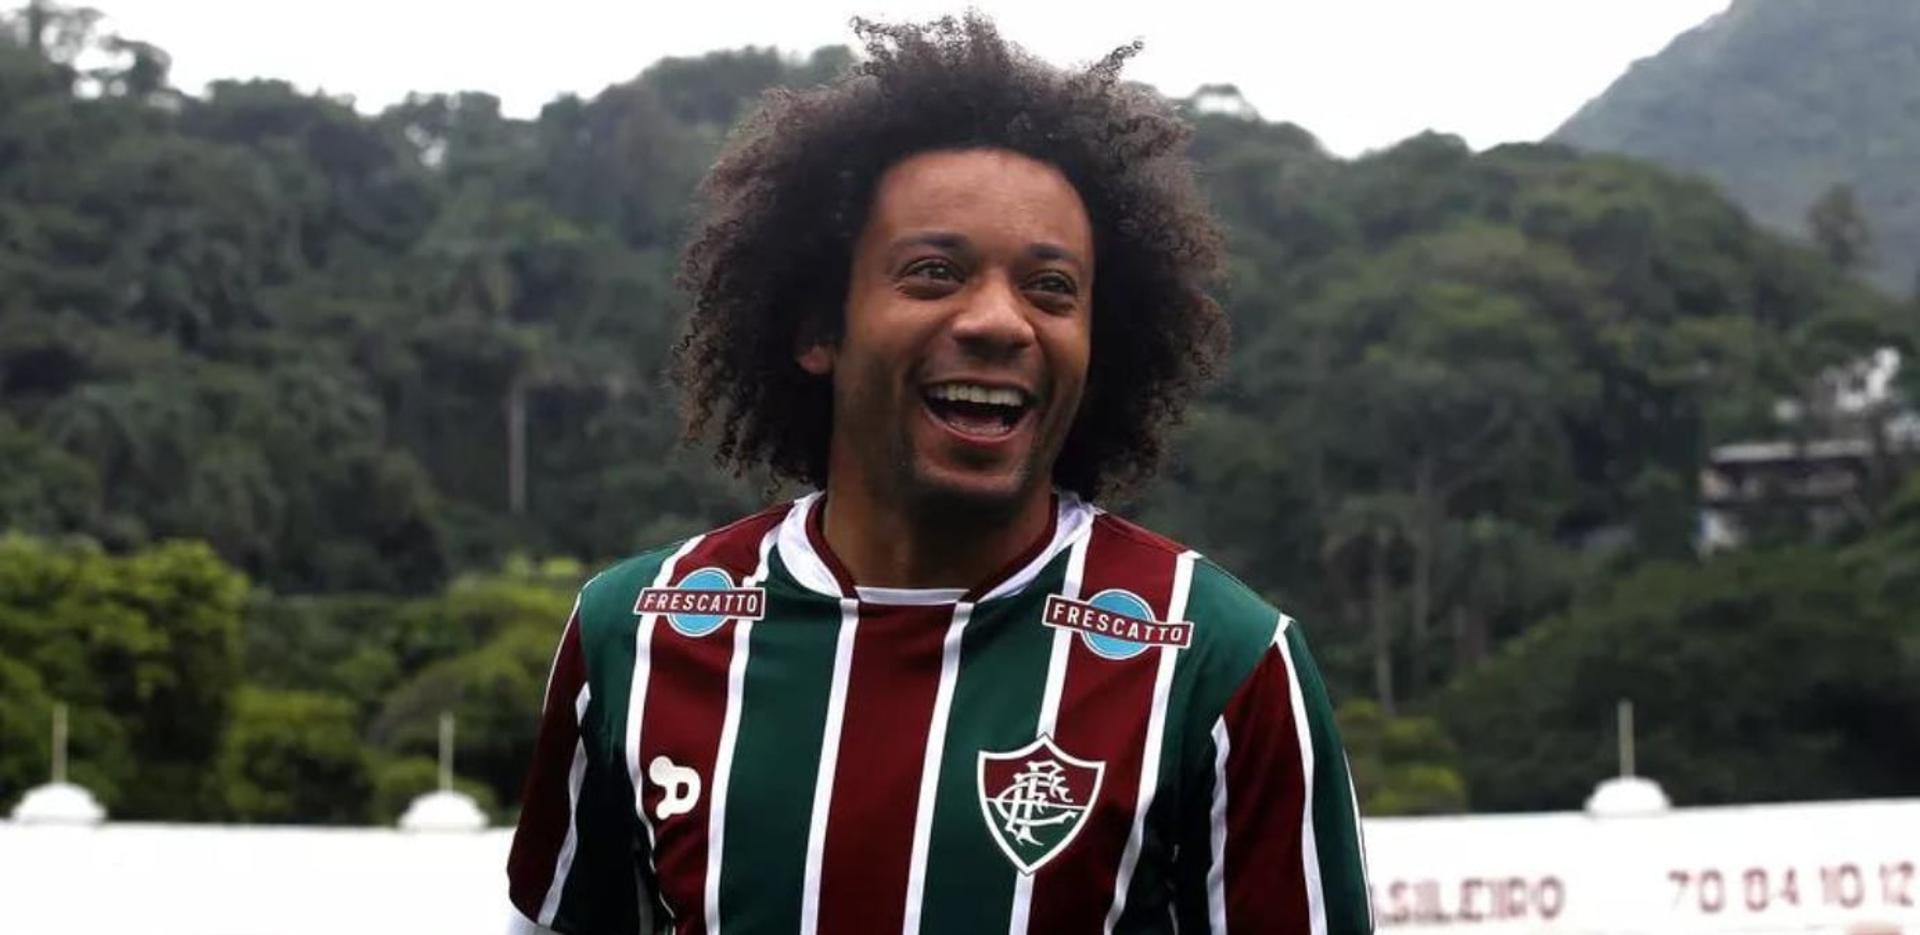 Marcelo